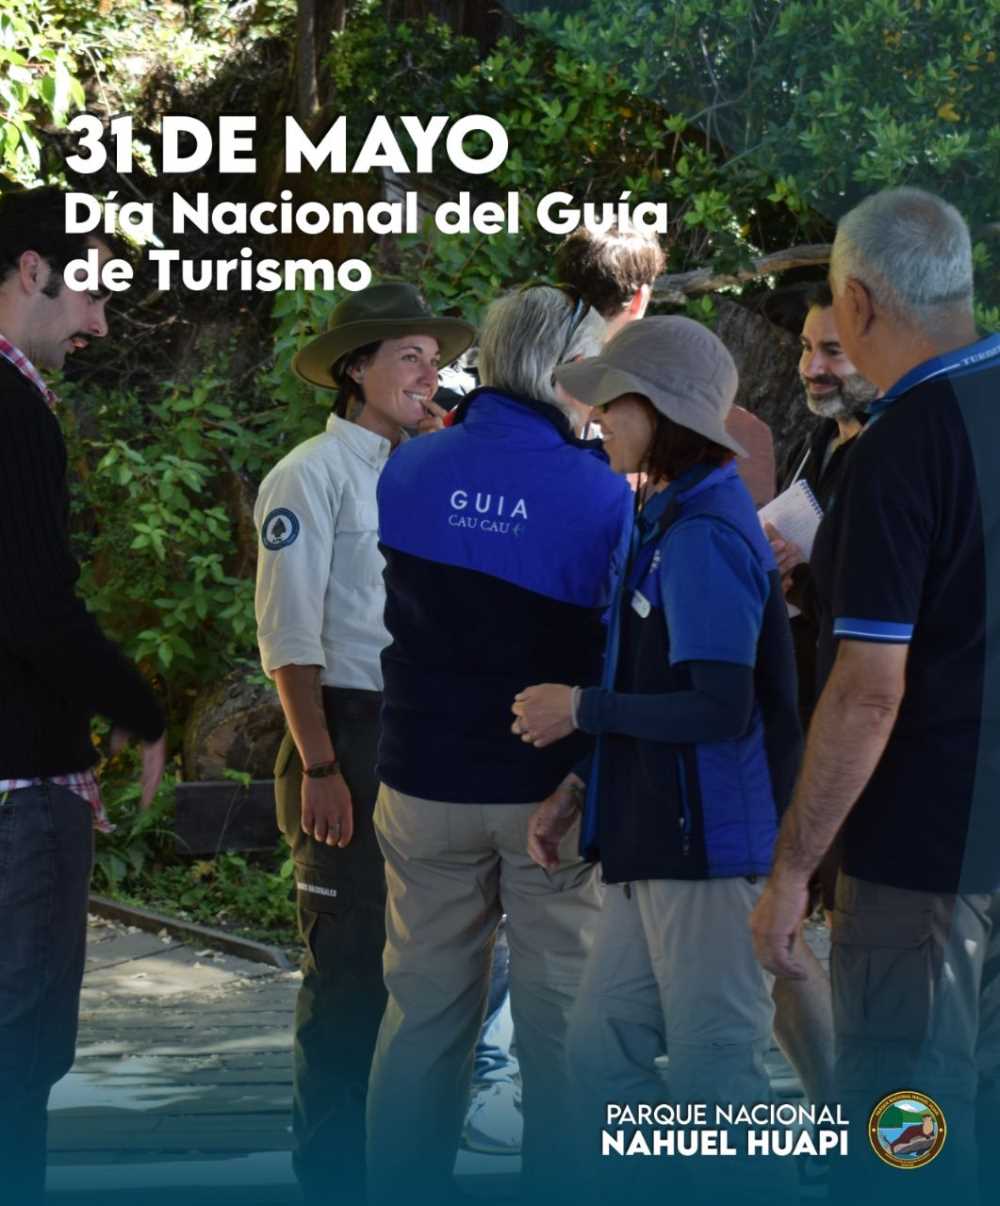 31 de mayo - Día Nacional del Guía de Turismo